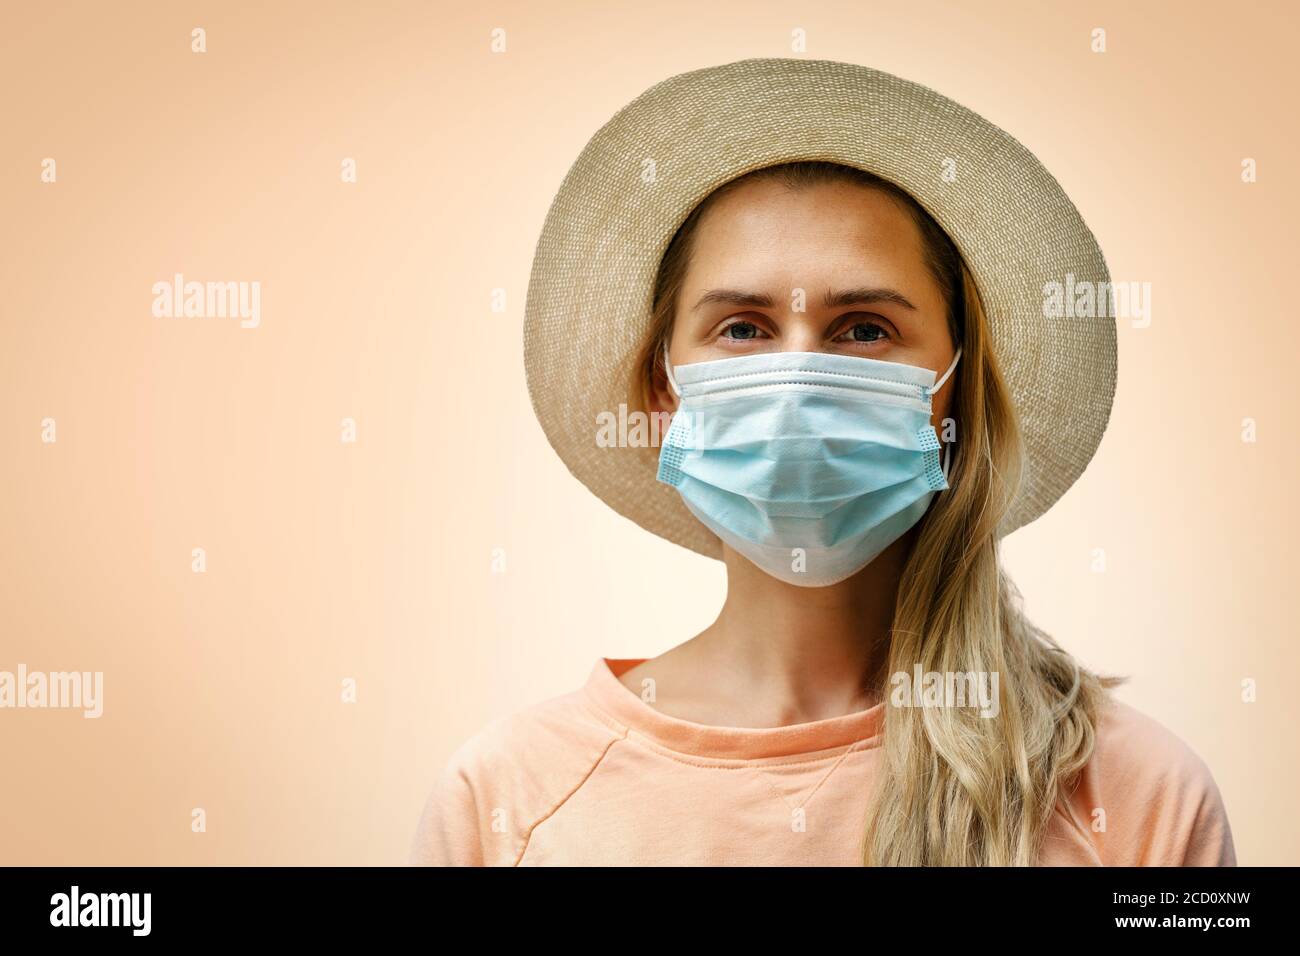 ritratto di giovane donna che indossa una maschera medica protettiva su sfondo arancione pastello. concetto pandemico coronavirus Foto Stock